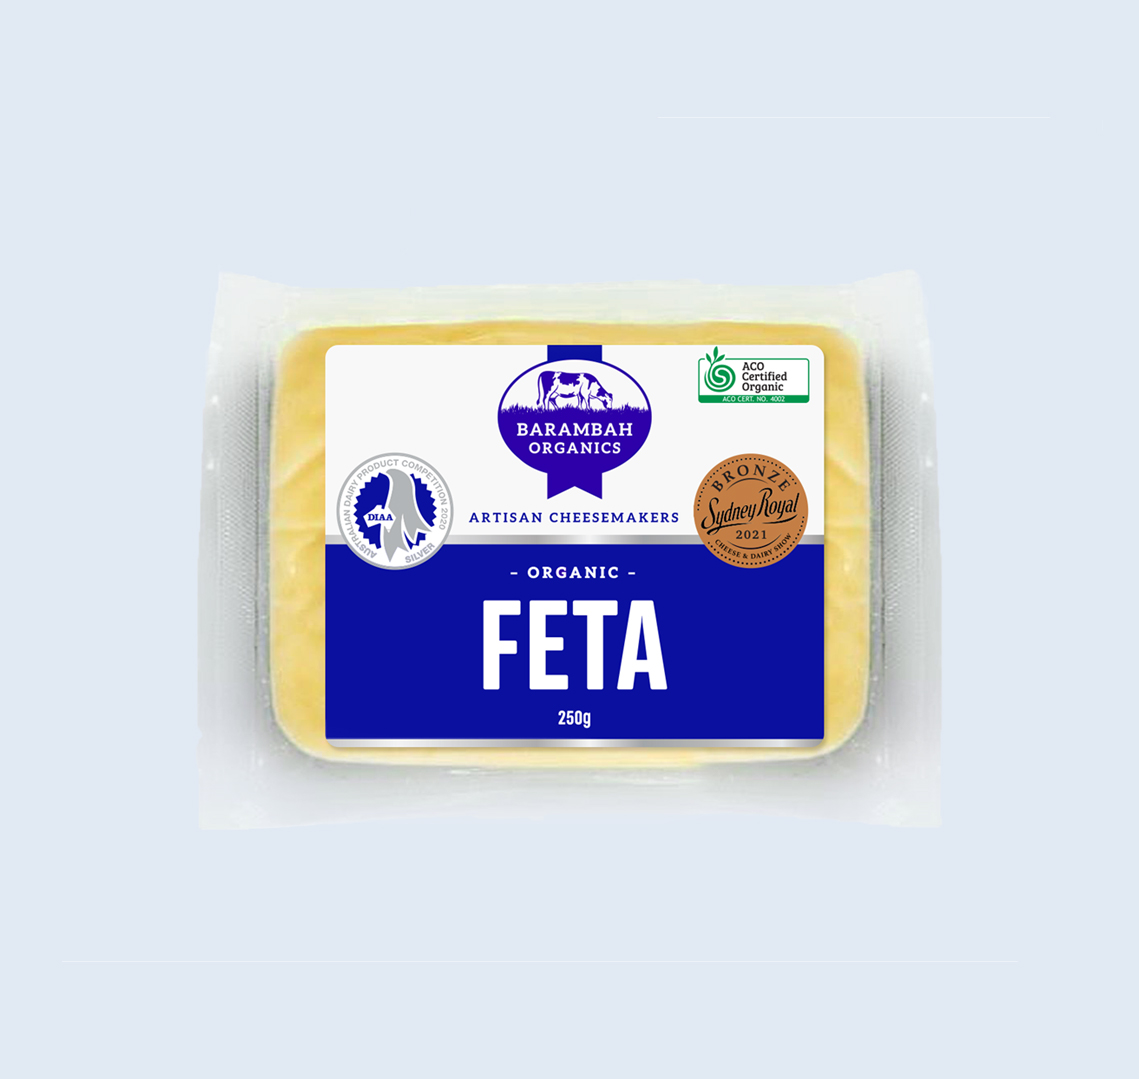 250g of Organic FETA Cheese - Organic Feta - Barambah Organics